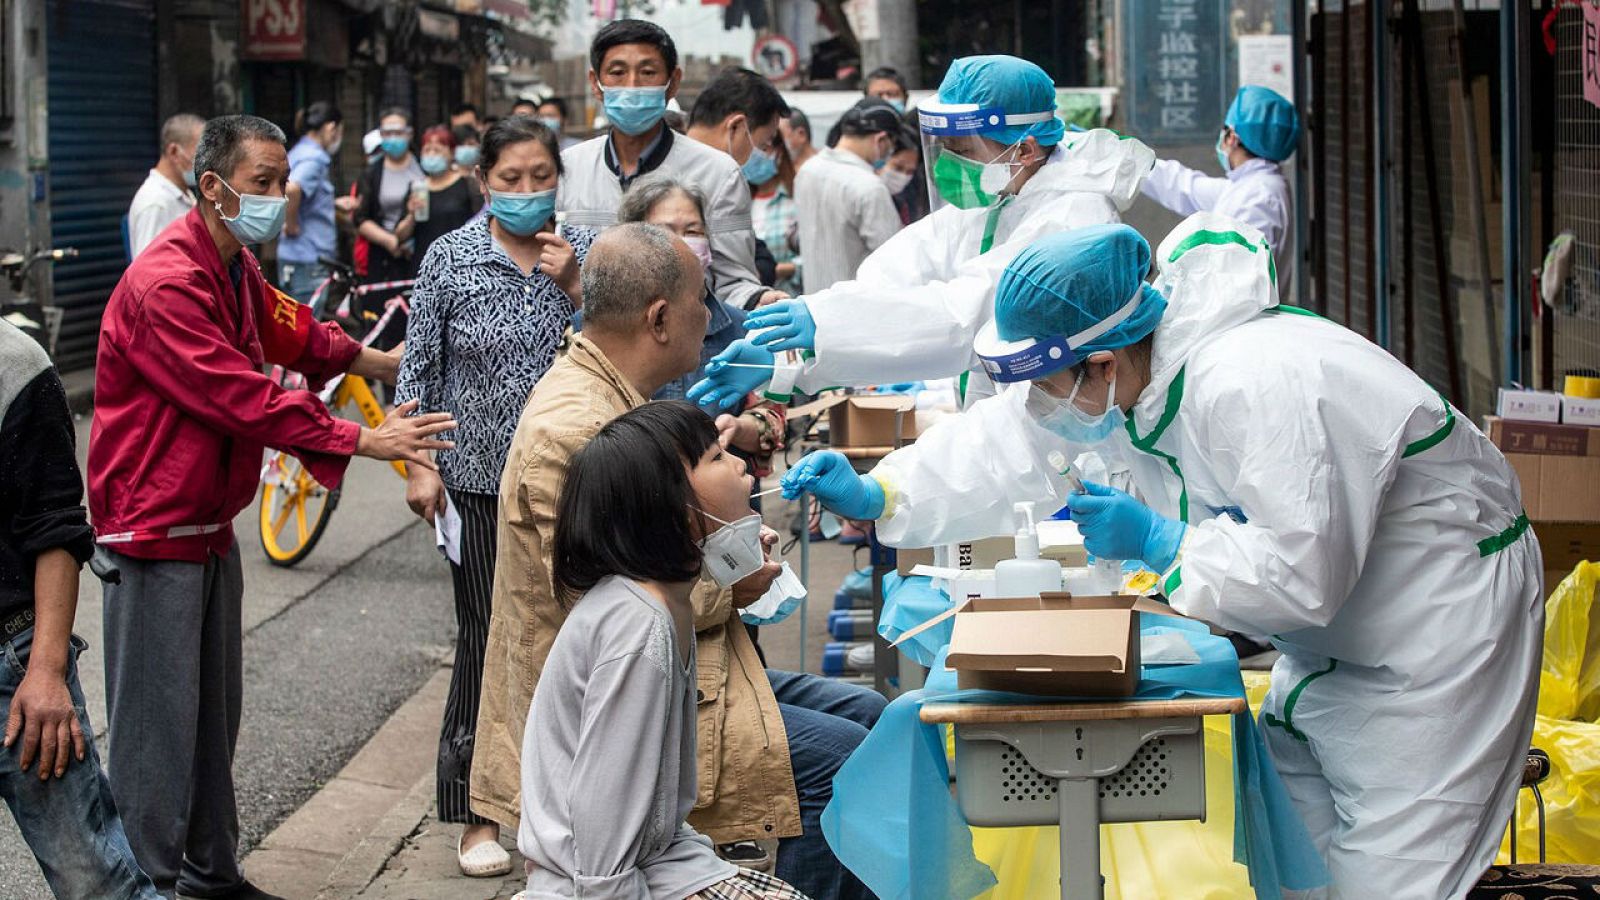 Wuhan detecta 300 casos asintomáticos tras realizar casi 10 millones de test en dos semanas - RTVE.es